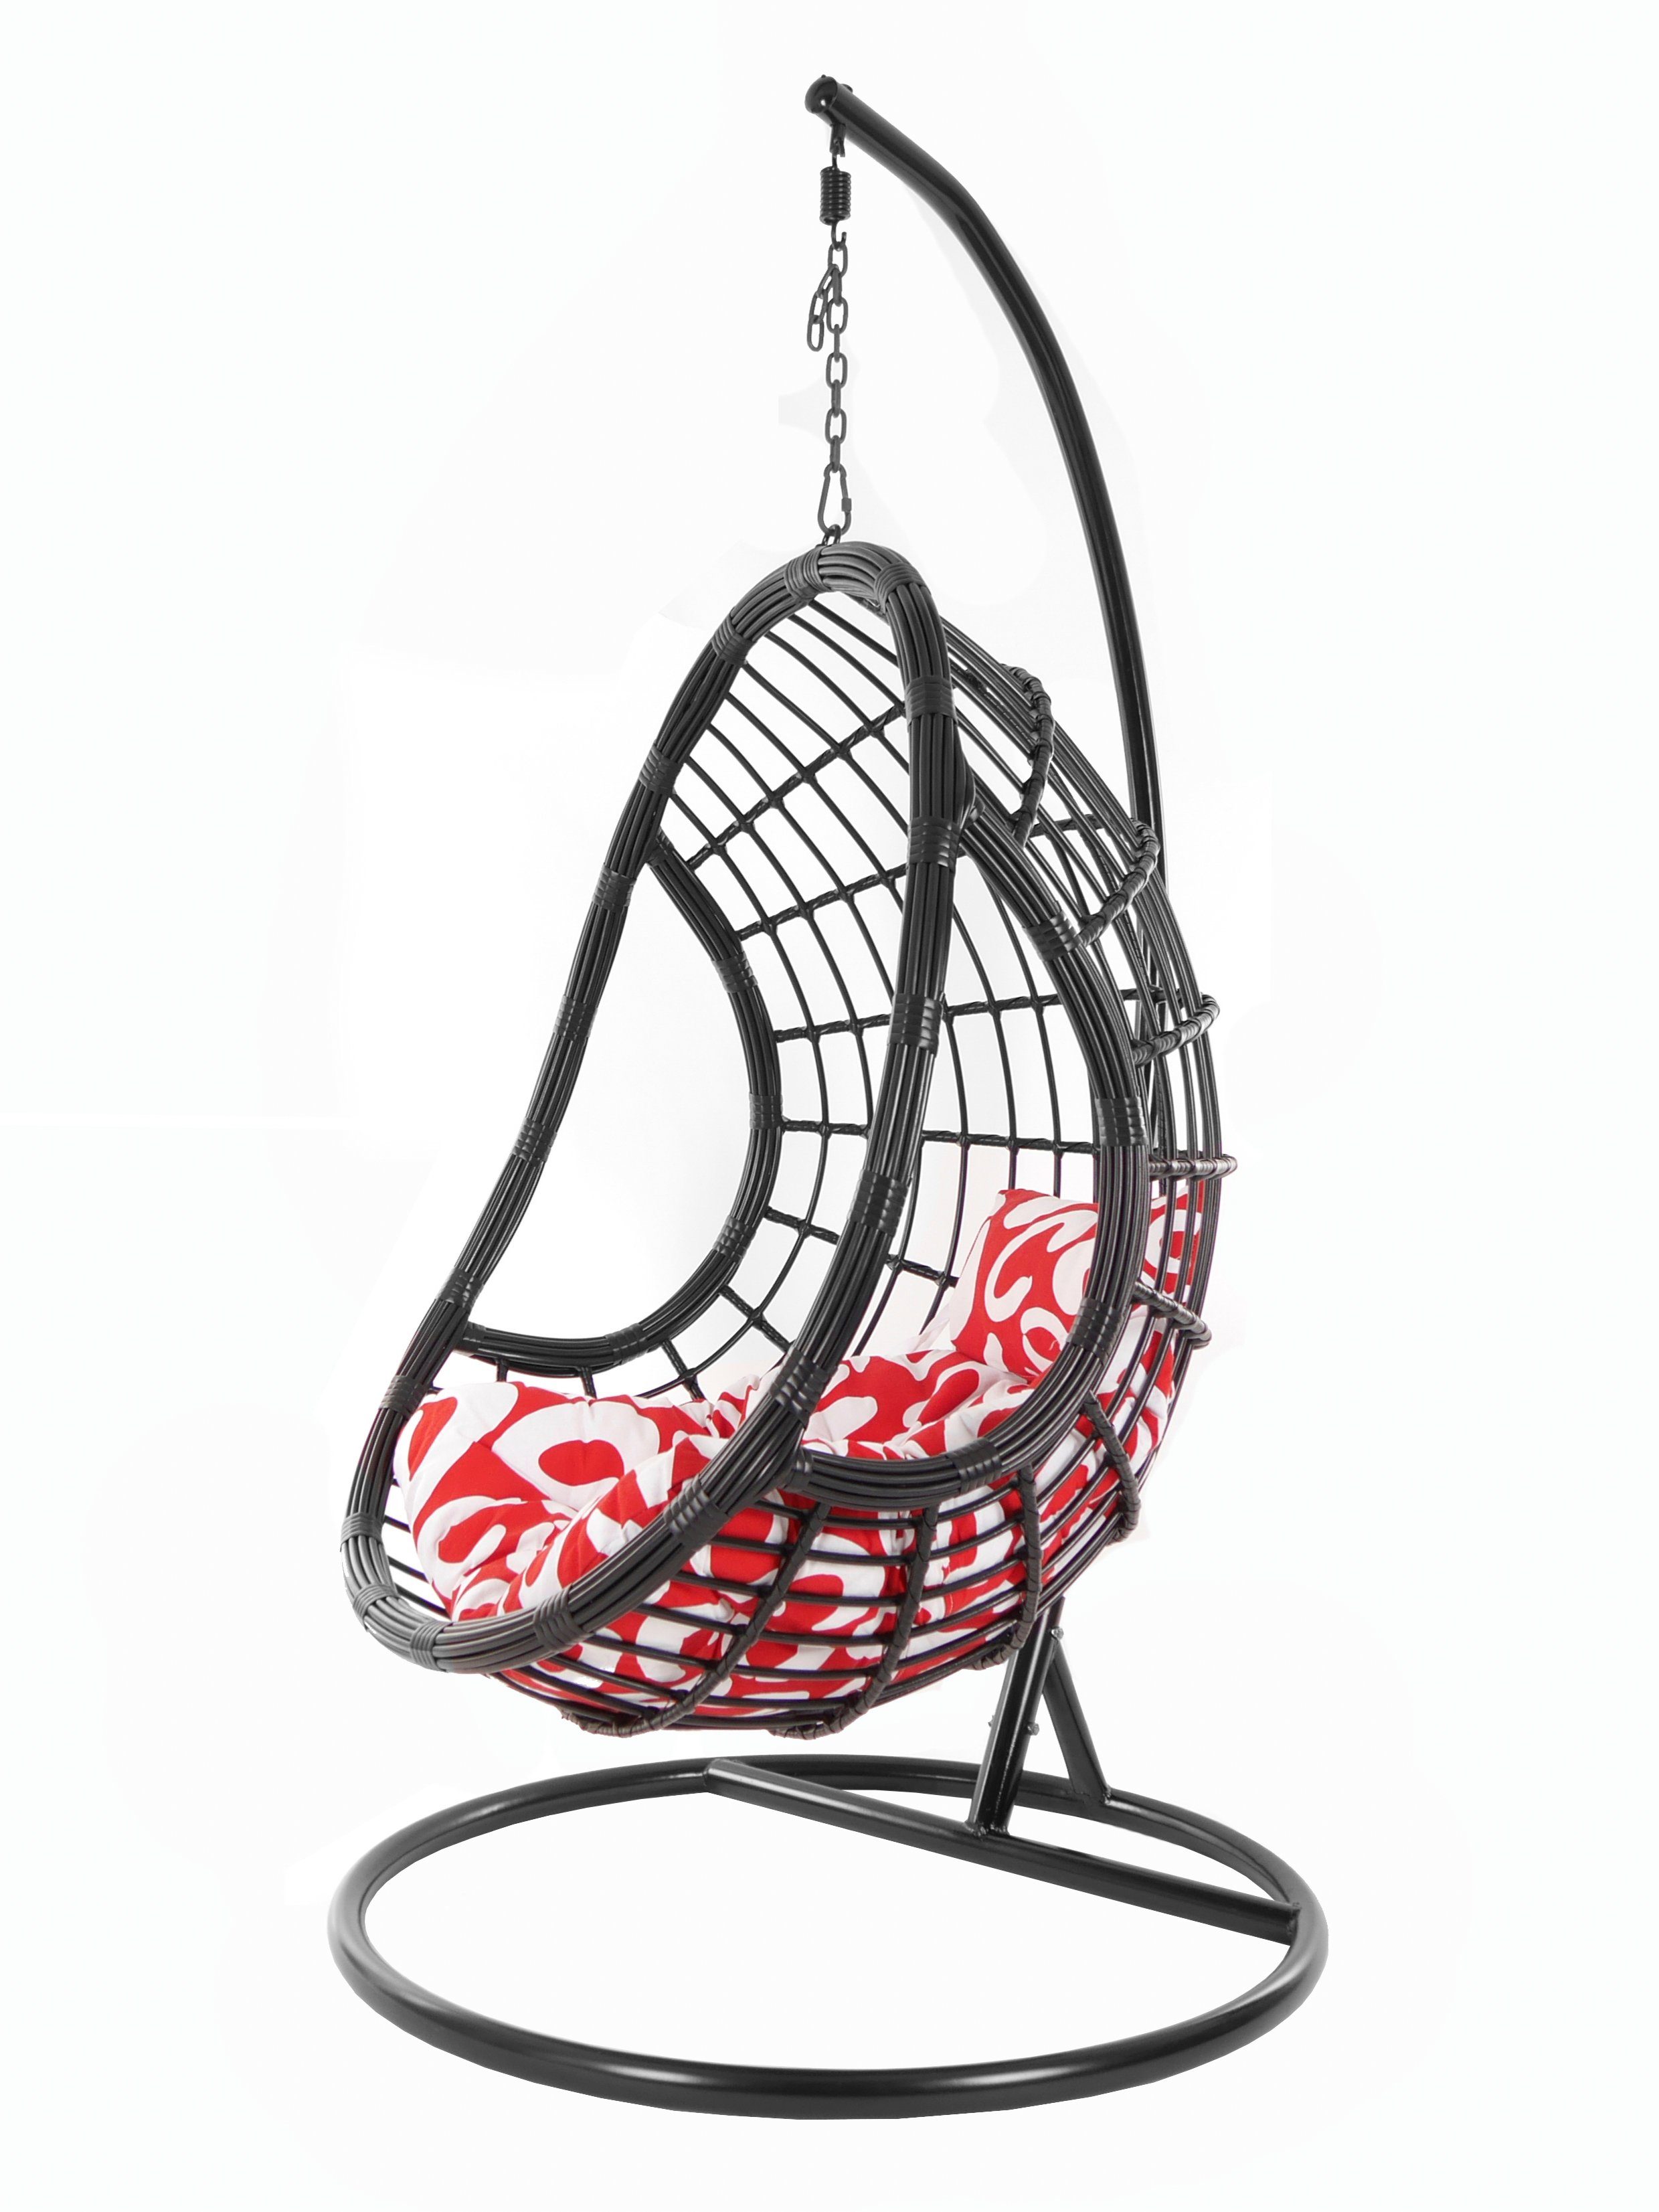 KIDEO Hängesessel PALMANOVA black, Swing Chair, schwarz, Loungemöbel, Hängesessel mit Gestell und Kissen, Schwebesessel, edles Design gemustert (3012 curly)